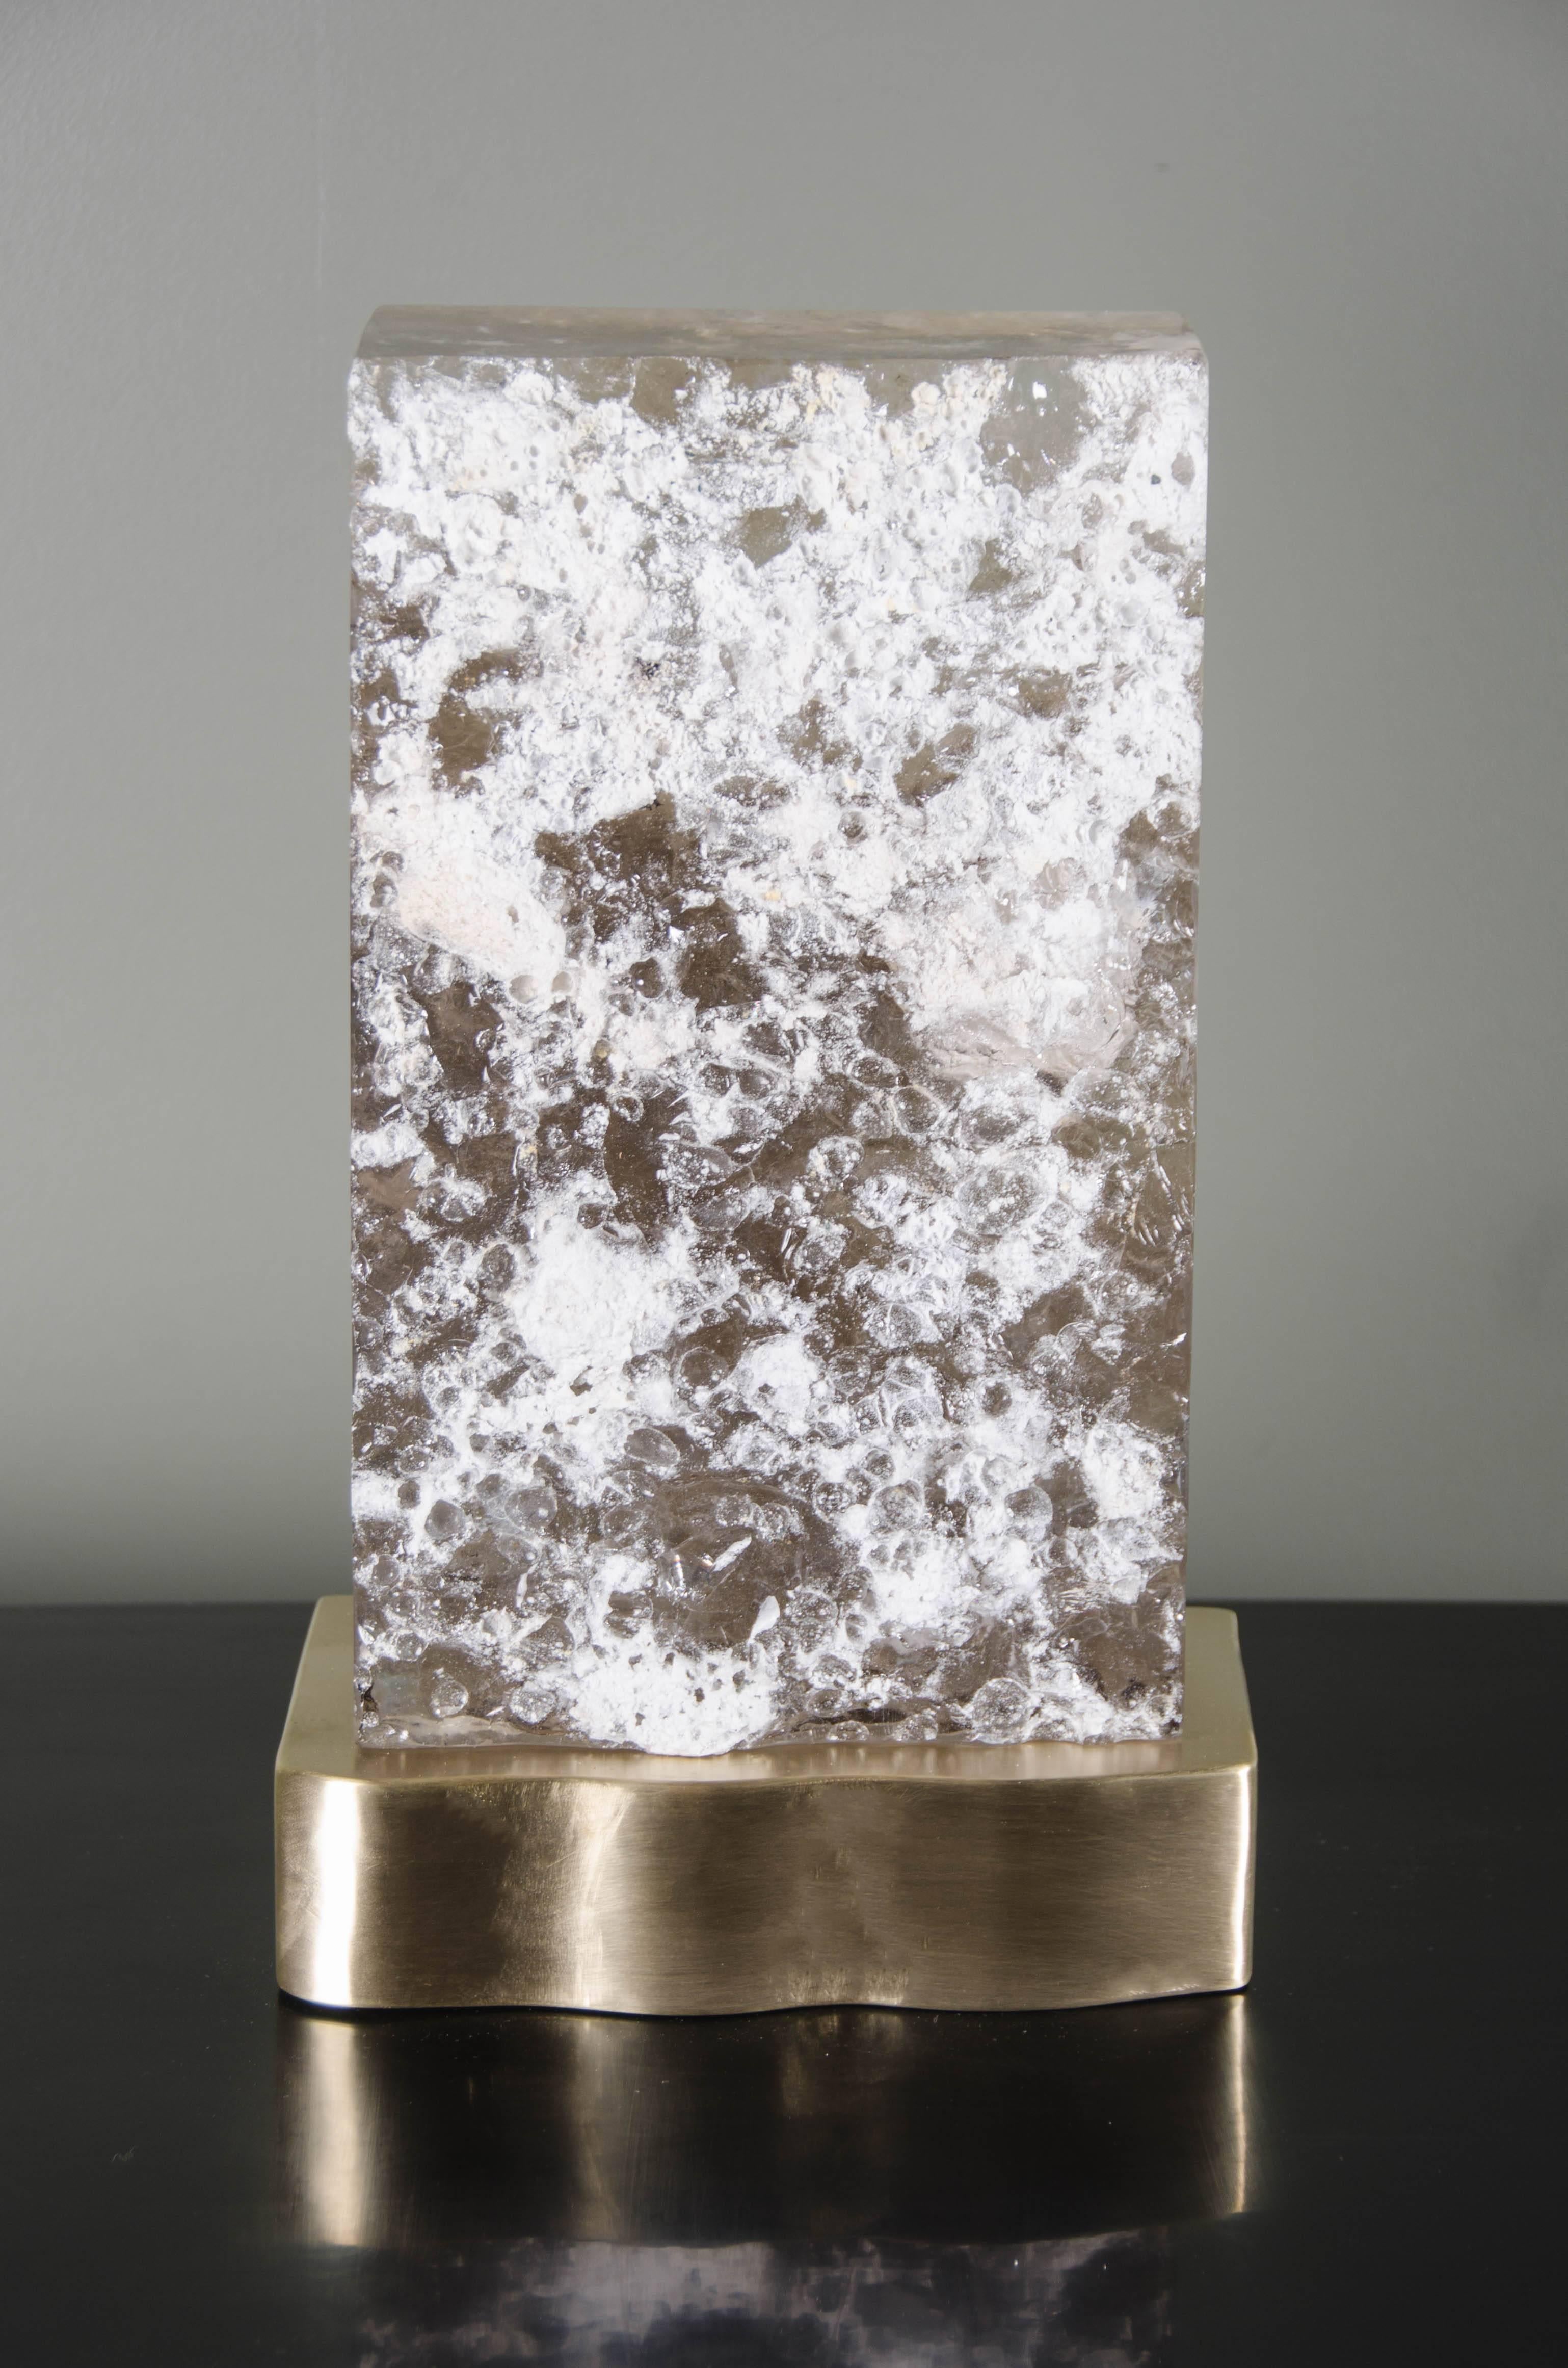 Cuadra light
Cristal de fumée
Sculpté à la main
Base en laiton
Main repoussée
Edition limitée

Les inclusions et la forme varient légèrement.
  